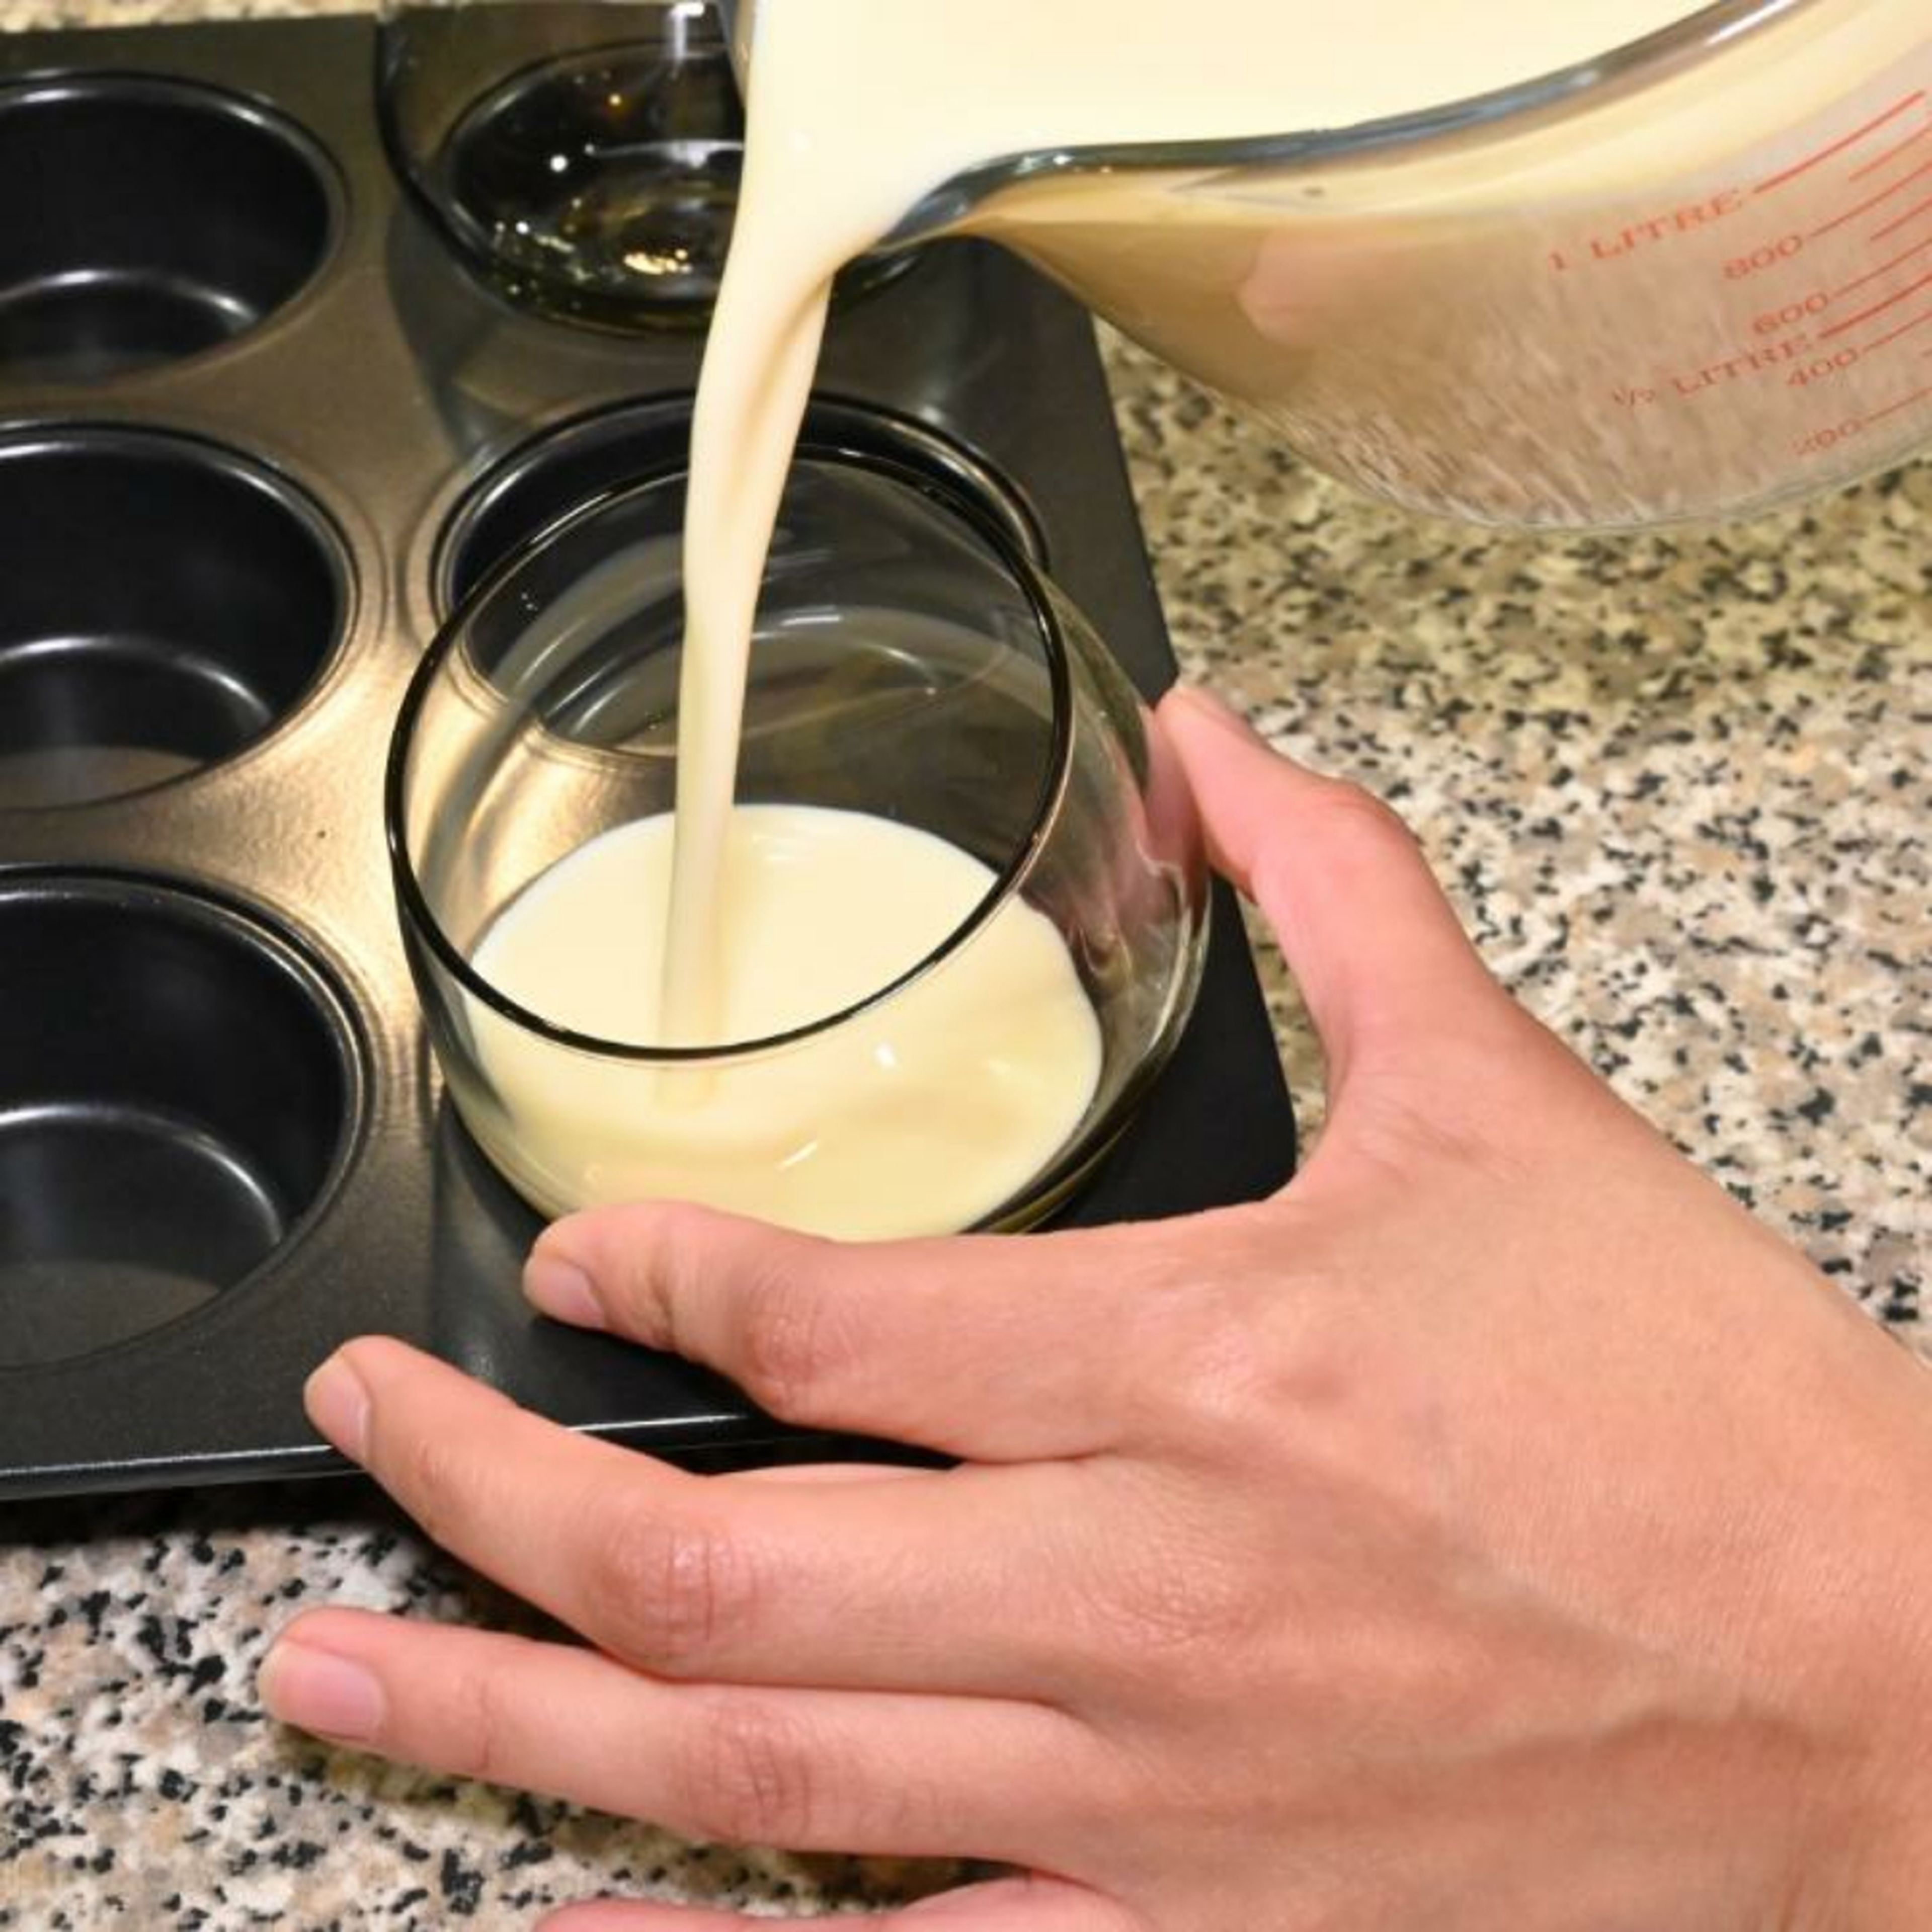 Verwende eine Muffinform, um die Dessertgläser darin zu platzieren. Stelle die Gläser leicht diagonal in die Muffinform und halte sie fest, während du vorsichtig die Crememischung hineingießt. So entsteht die besondere Schichtung.